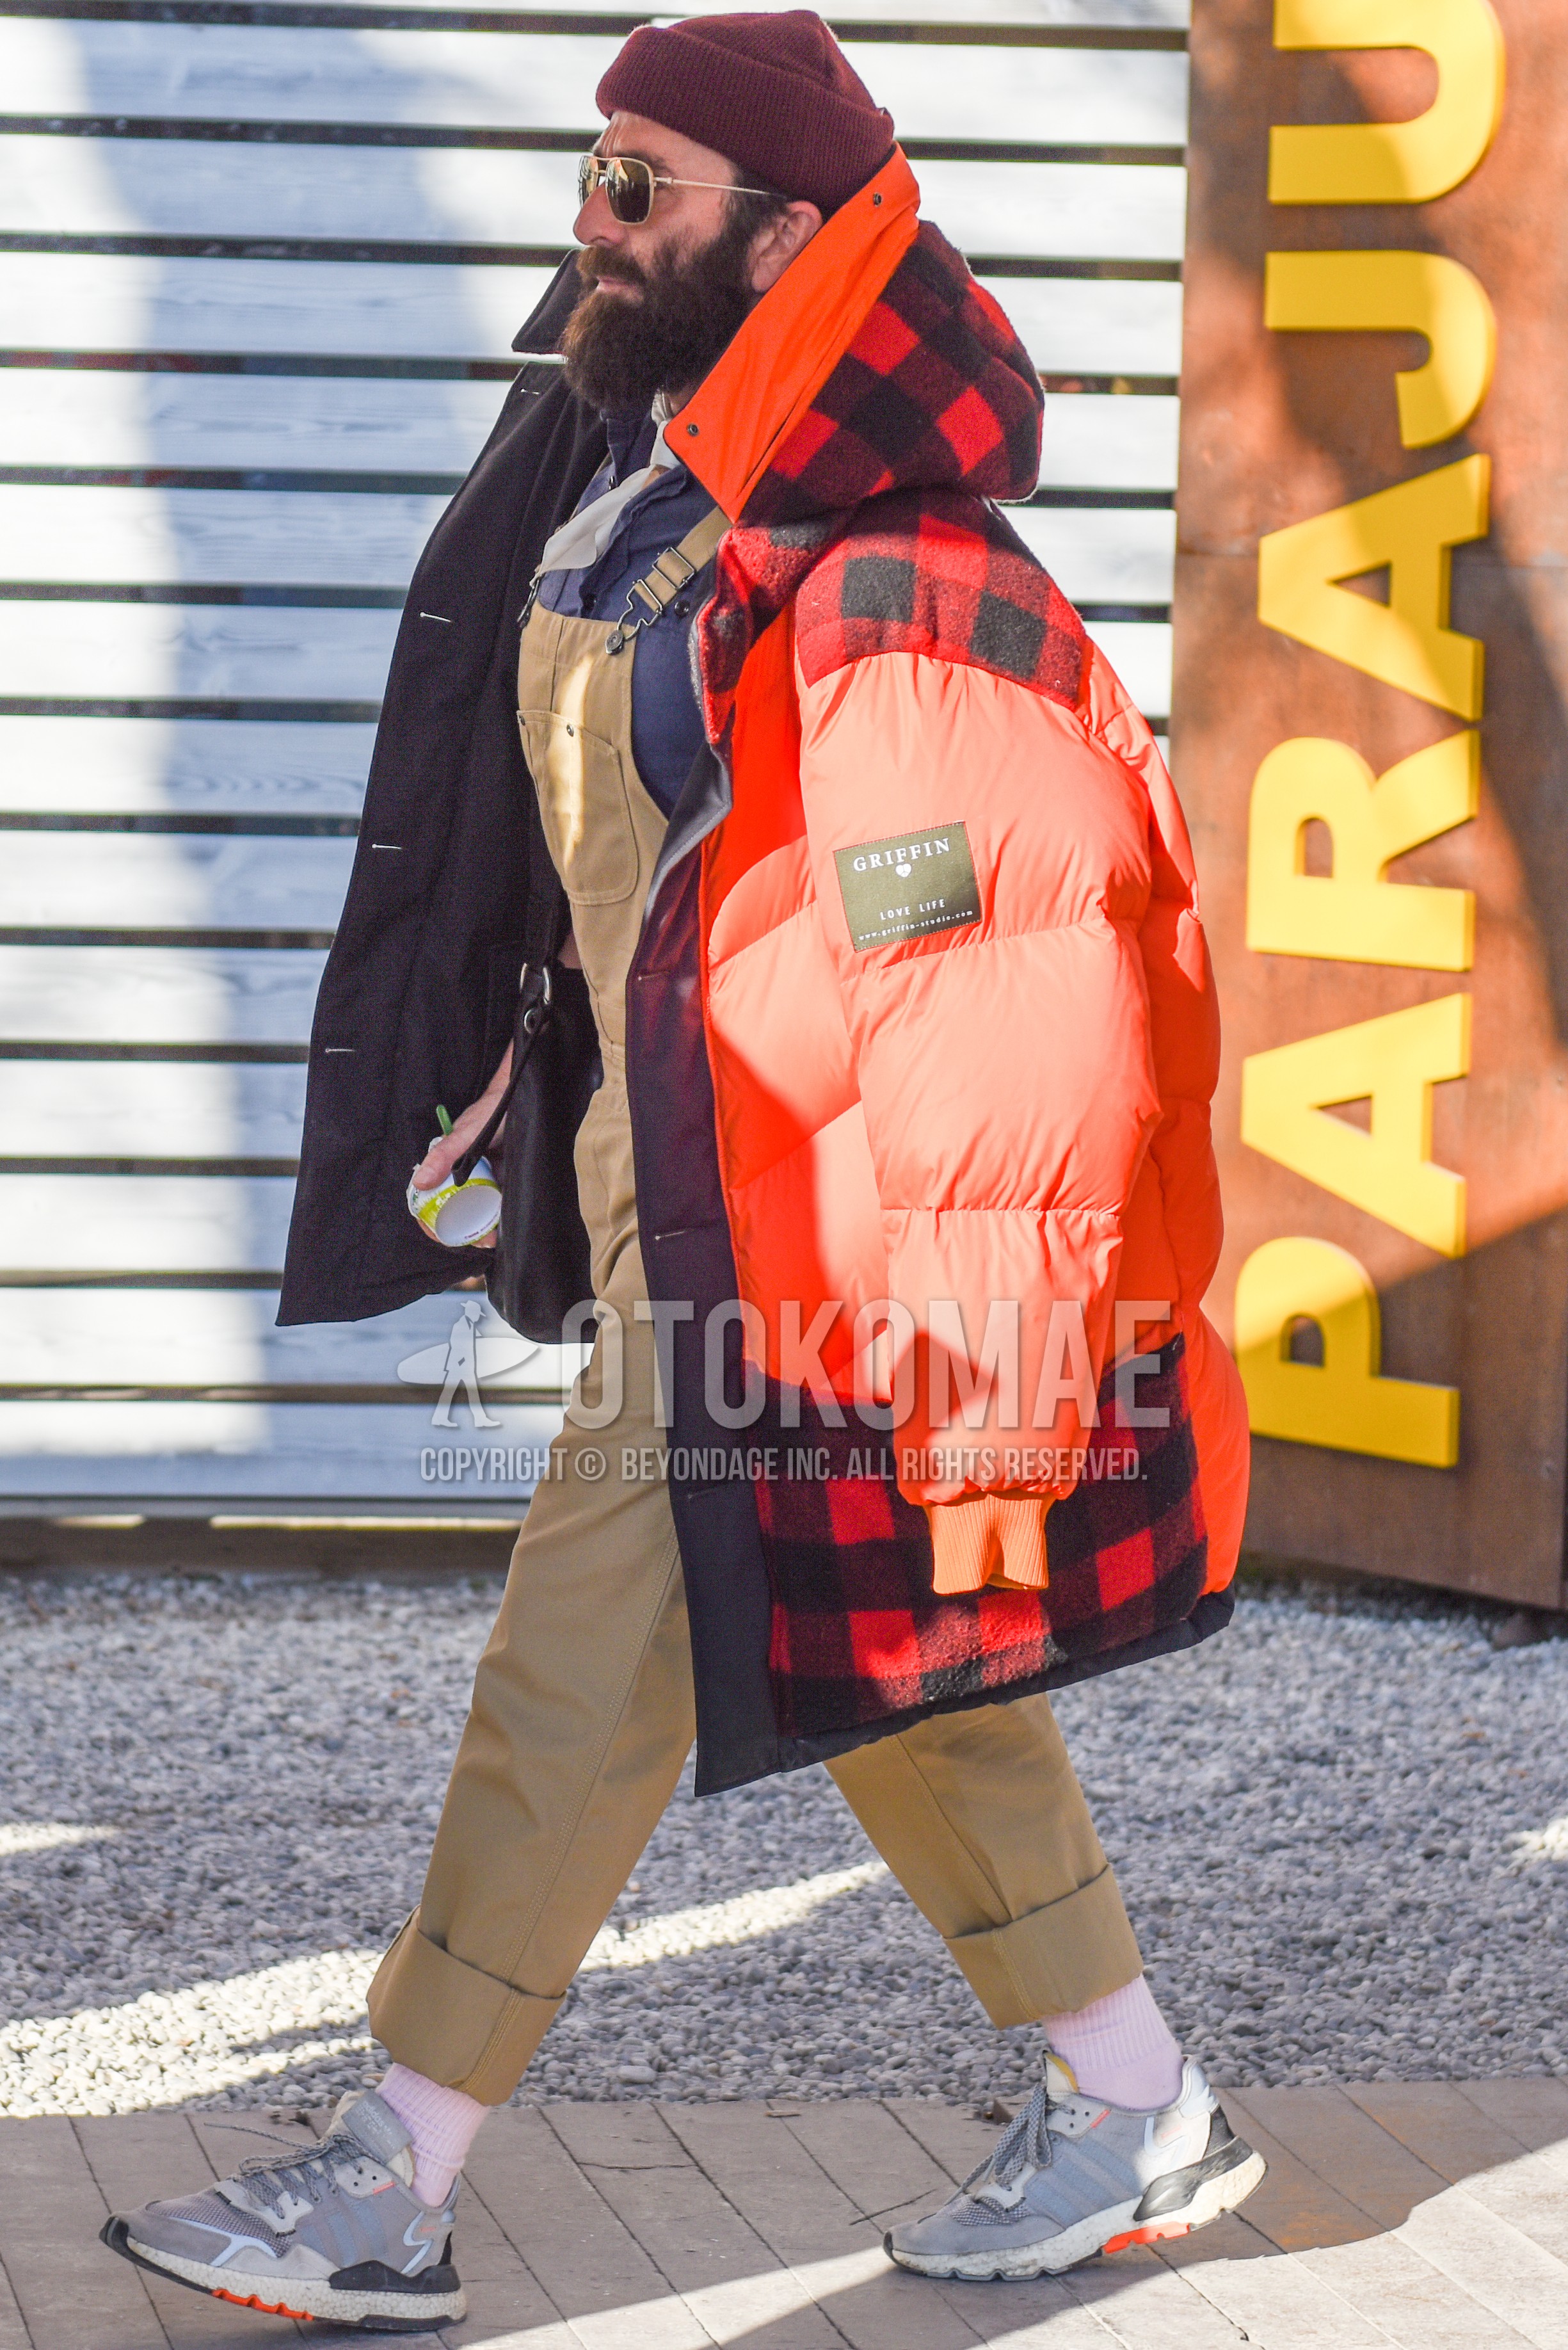 Men's autumn winter outfit with red plain knit cap, gold plain sunglasses, white plain bandana/neckerchief, orange red plain down jacket, beige plain jumpsuit, gray plain shirt, white plain socks, gray low-cut sneakers.